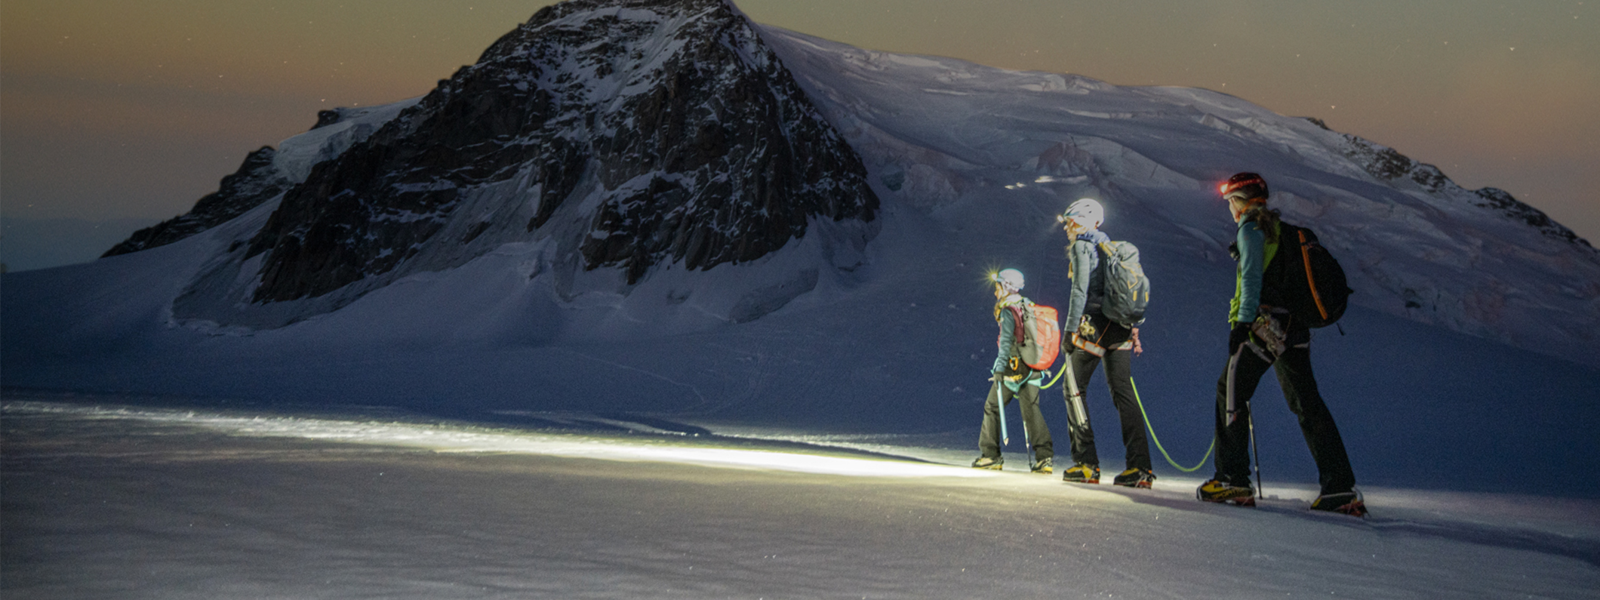 Tres excursionistas atraviesan una montaña nevada bajo un cielo estrellado